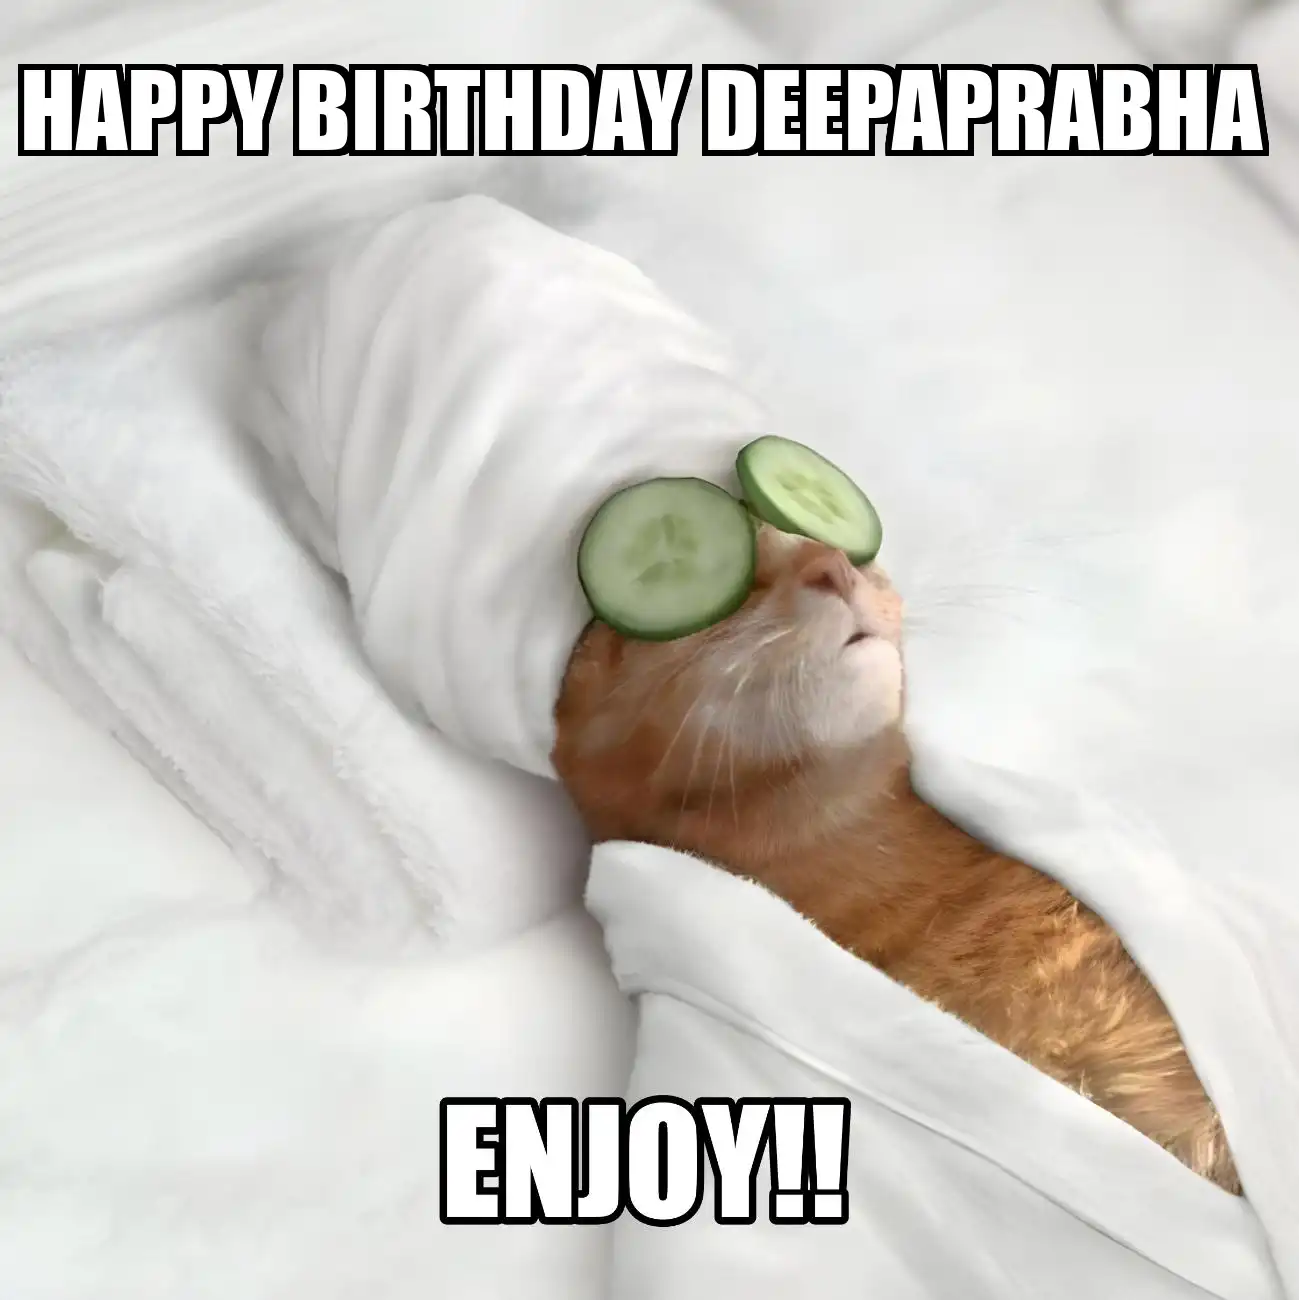 Happy Birthday Deepaprabha Enjoy Cat Meme